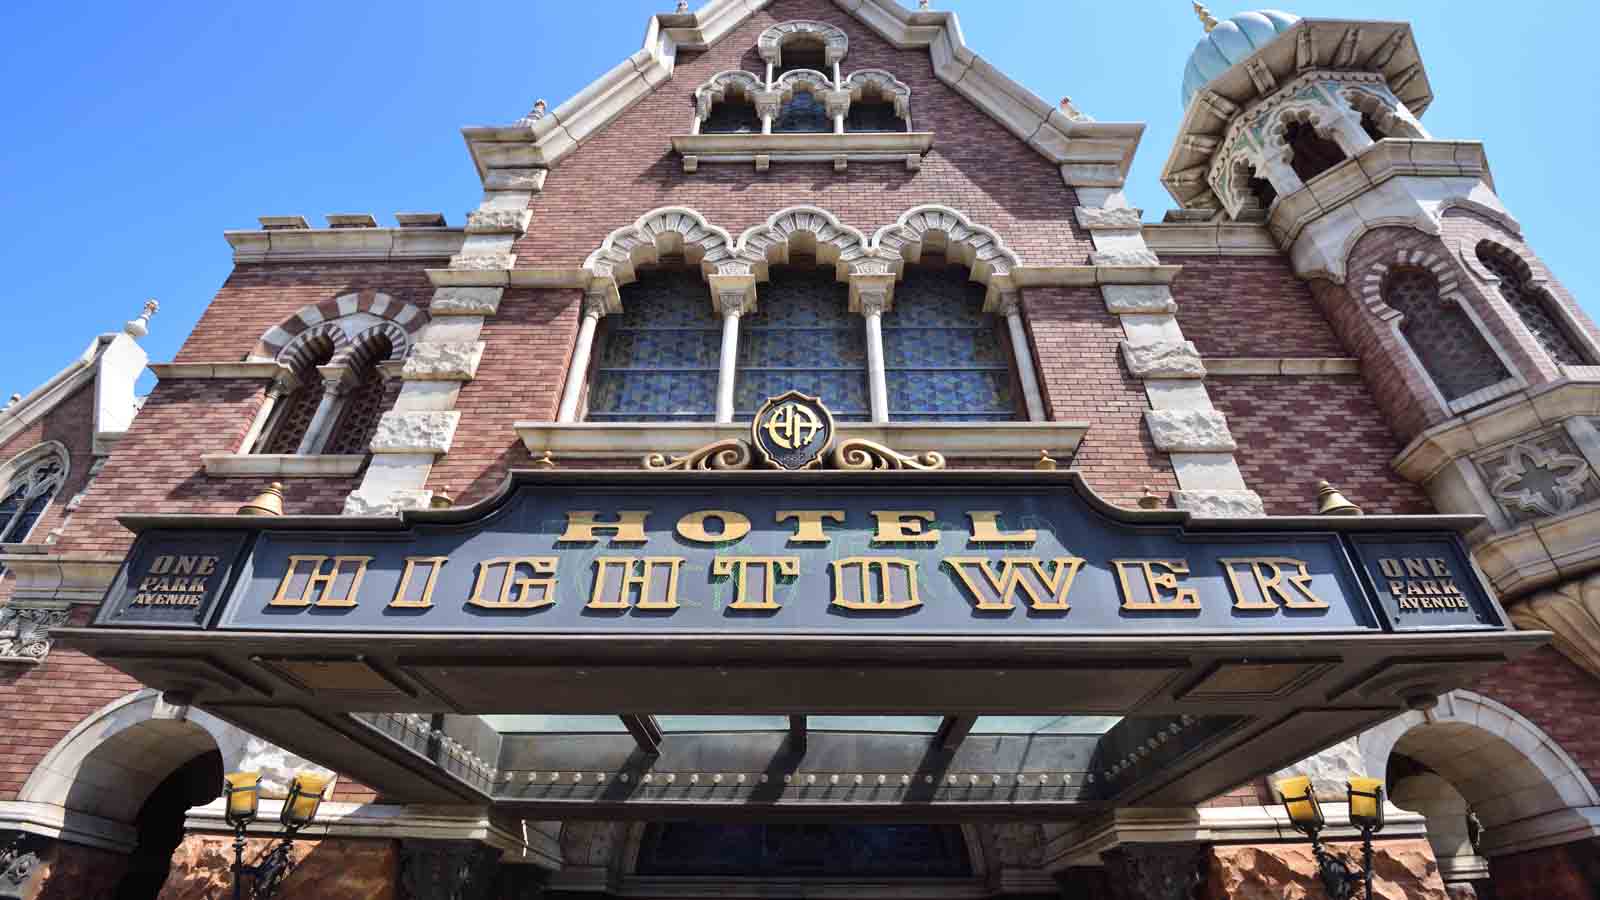 Tdsタワー オブ テラー待ち時間が激増 19年5月13日からエレベーターが1台休止中 Disney Colors Blog